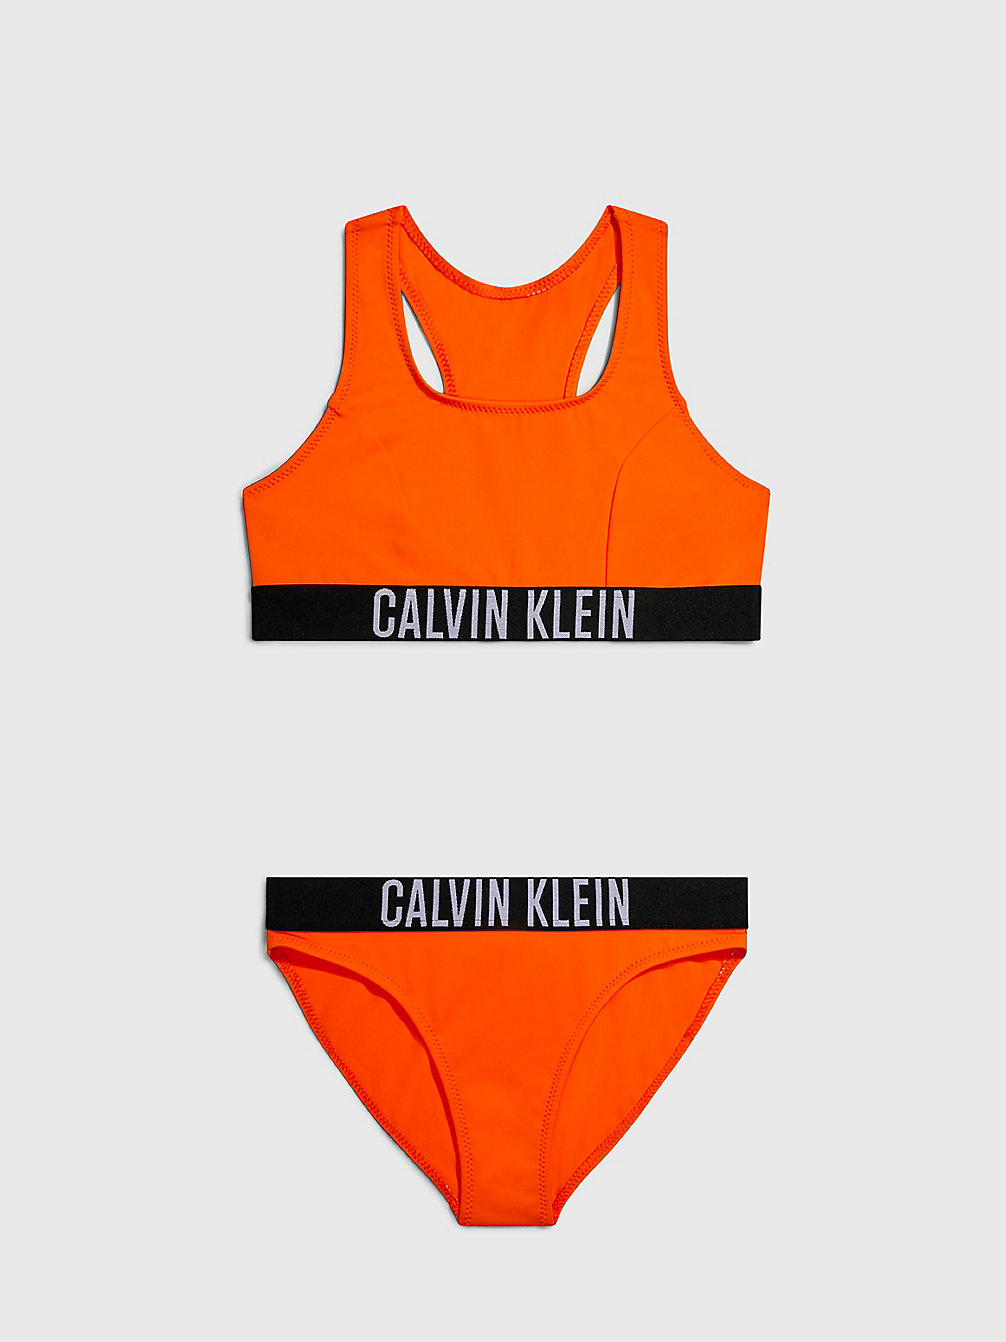 VIVID ORANGE > Bikini-Set Mit Bralette Für Mädchen - Intense Power > undefined girls - Calvin Klein